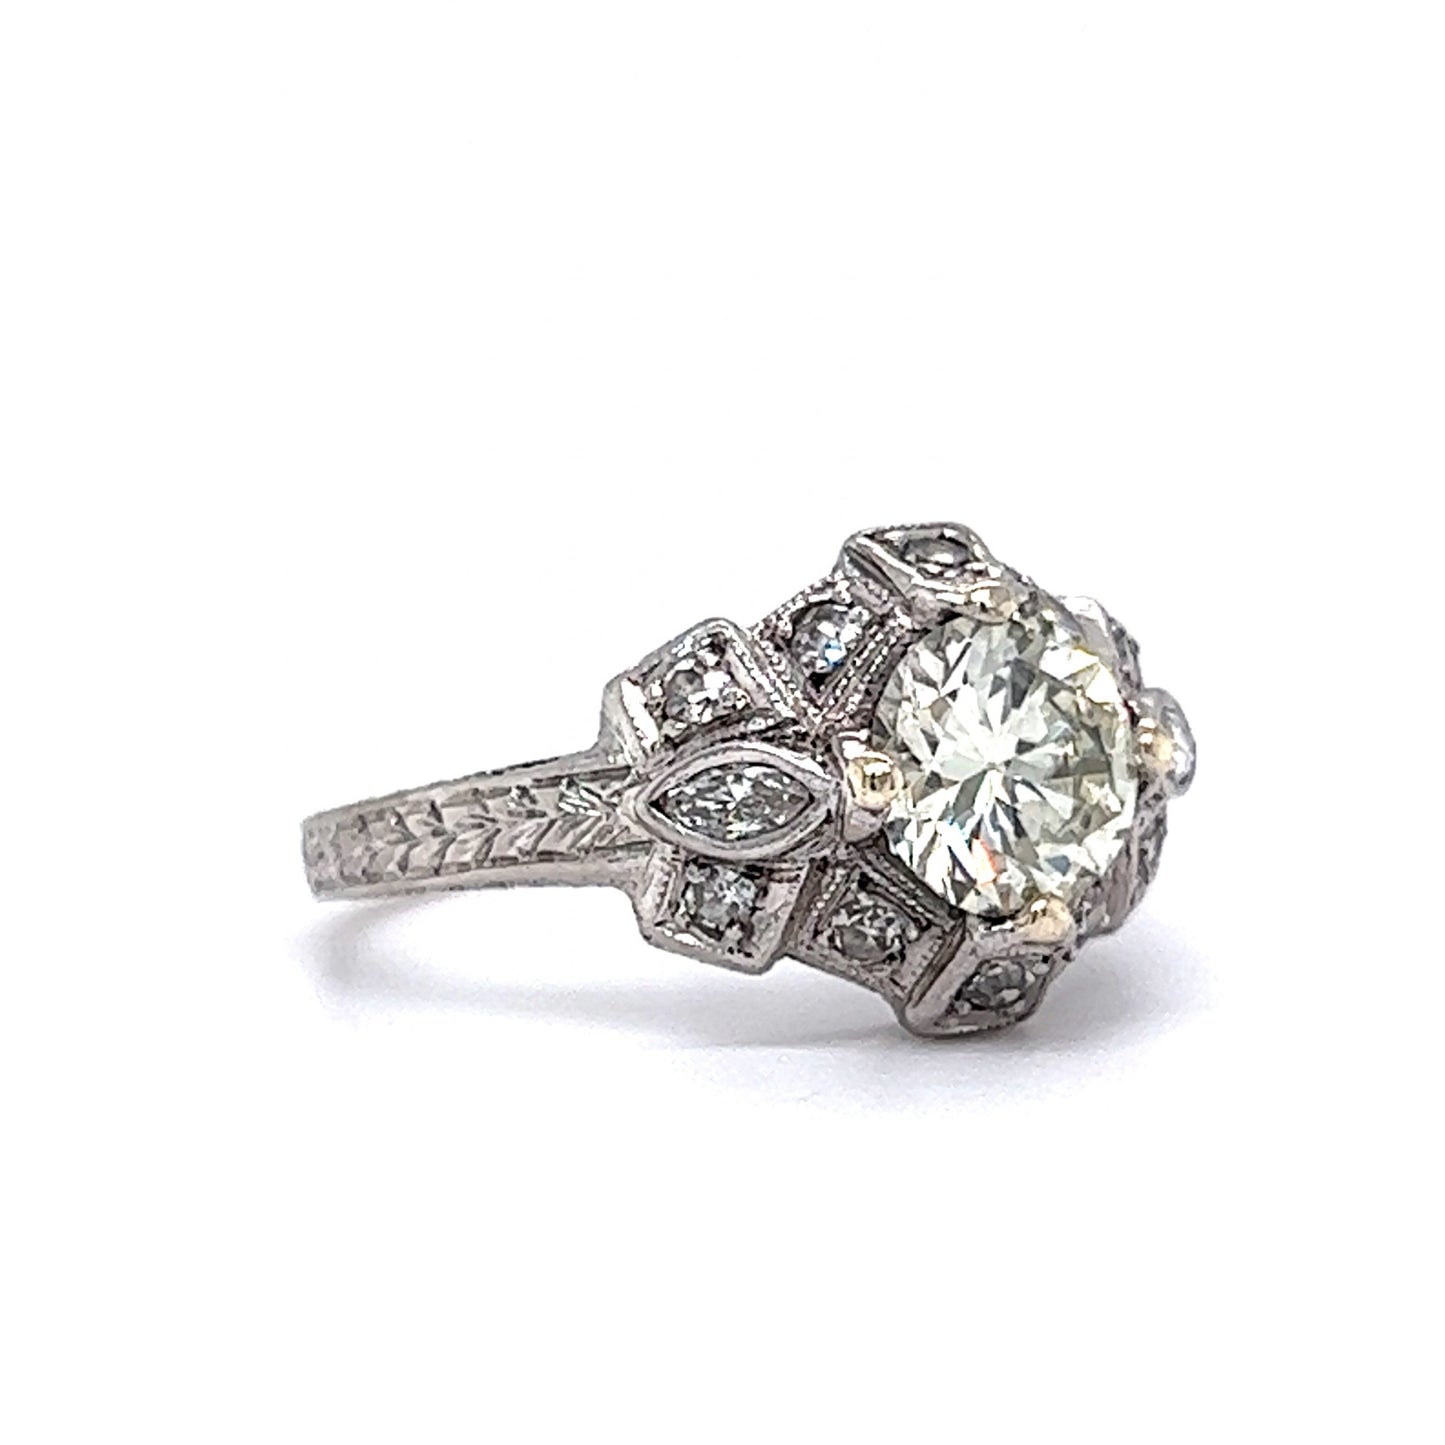 Unique Antique Art Deco Diamond Engagement Ring in Platinum